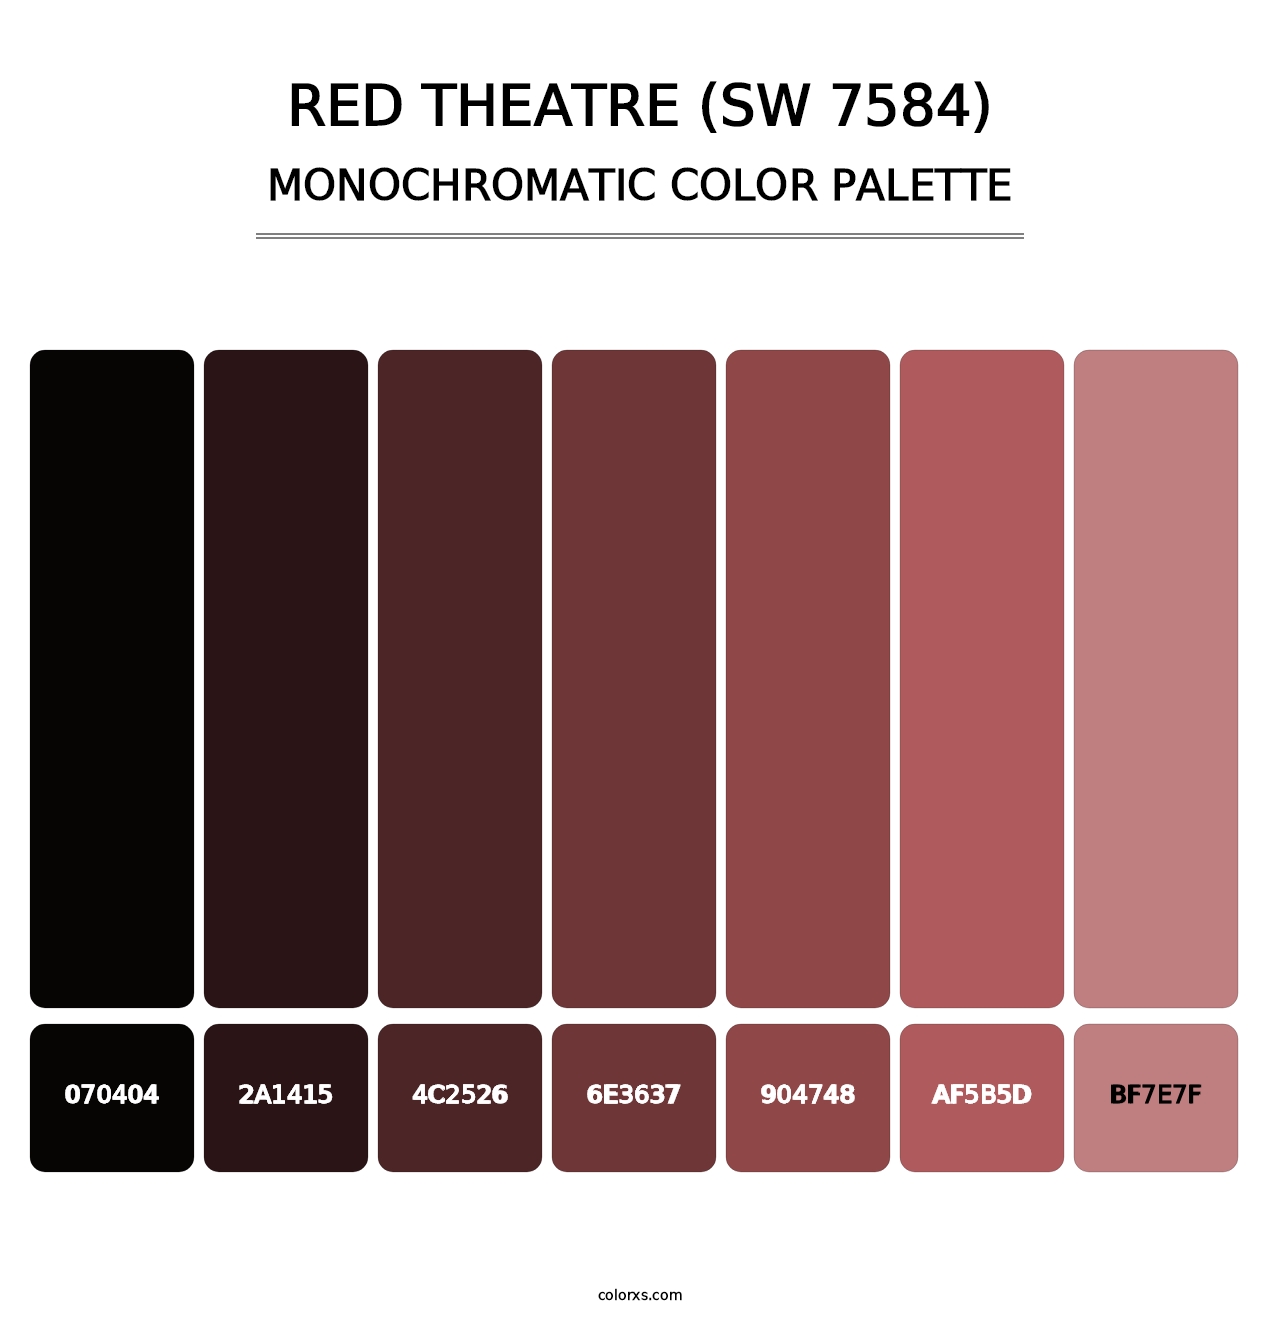 Red Theatre (SW 7584) - Monochromatic Color Palette